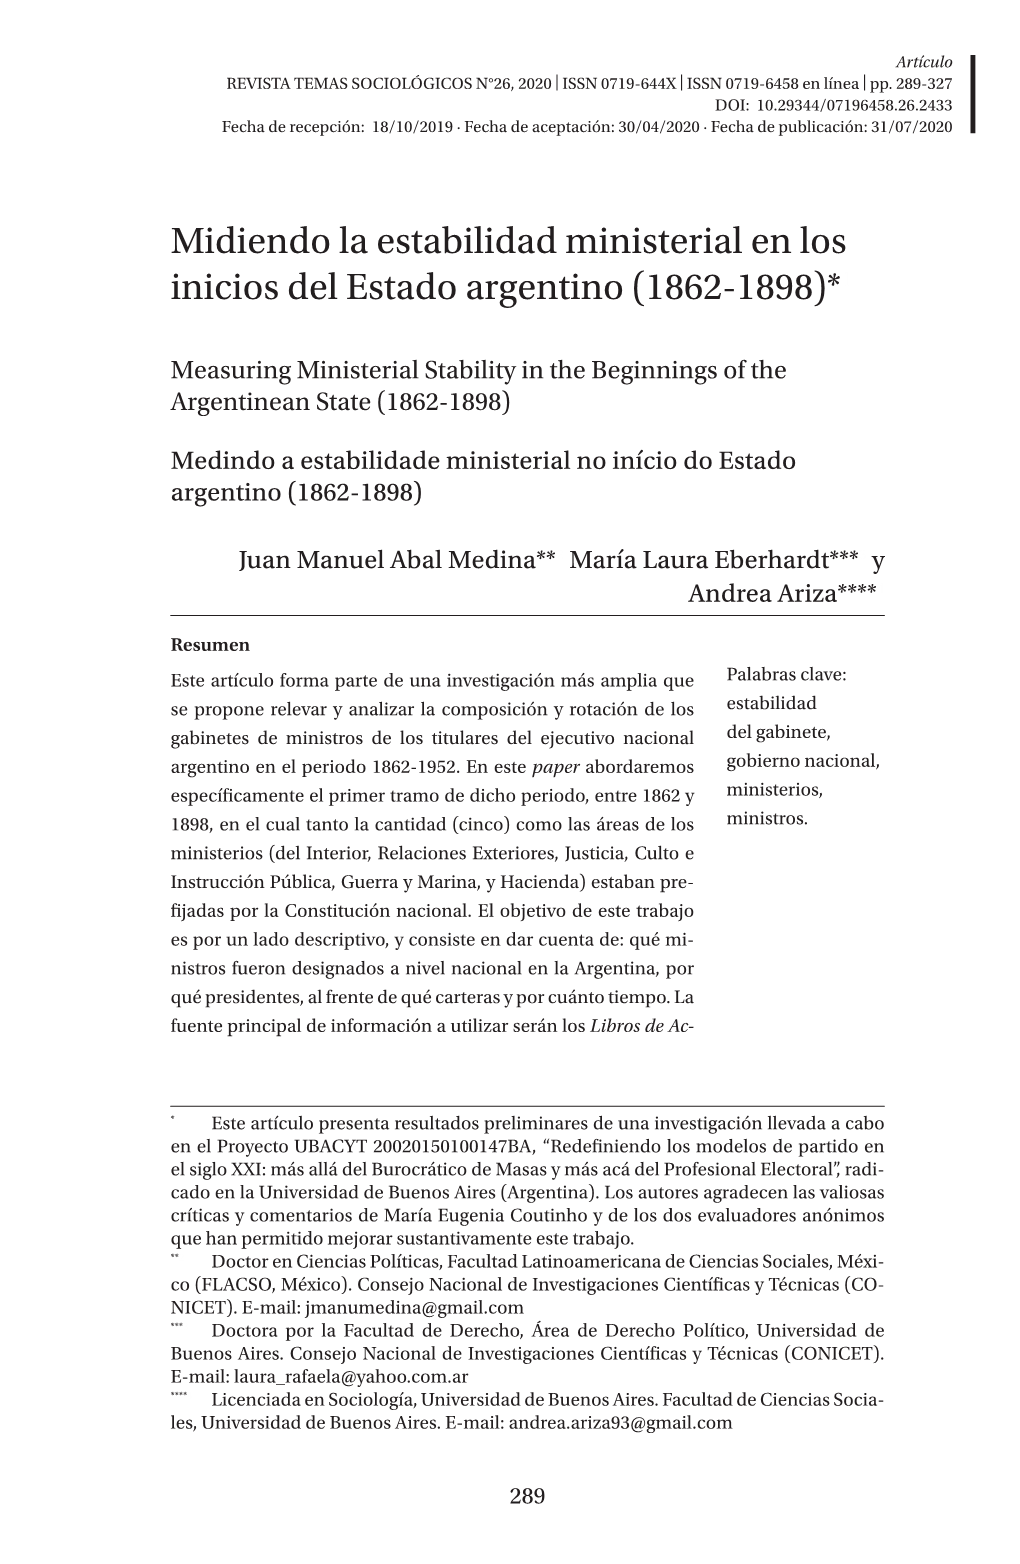 Midiendo La Estabilidad Ministerial En Los Inicios Del Estado Argentino (1862-1898)*1